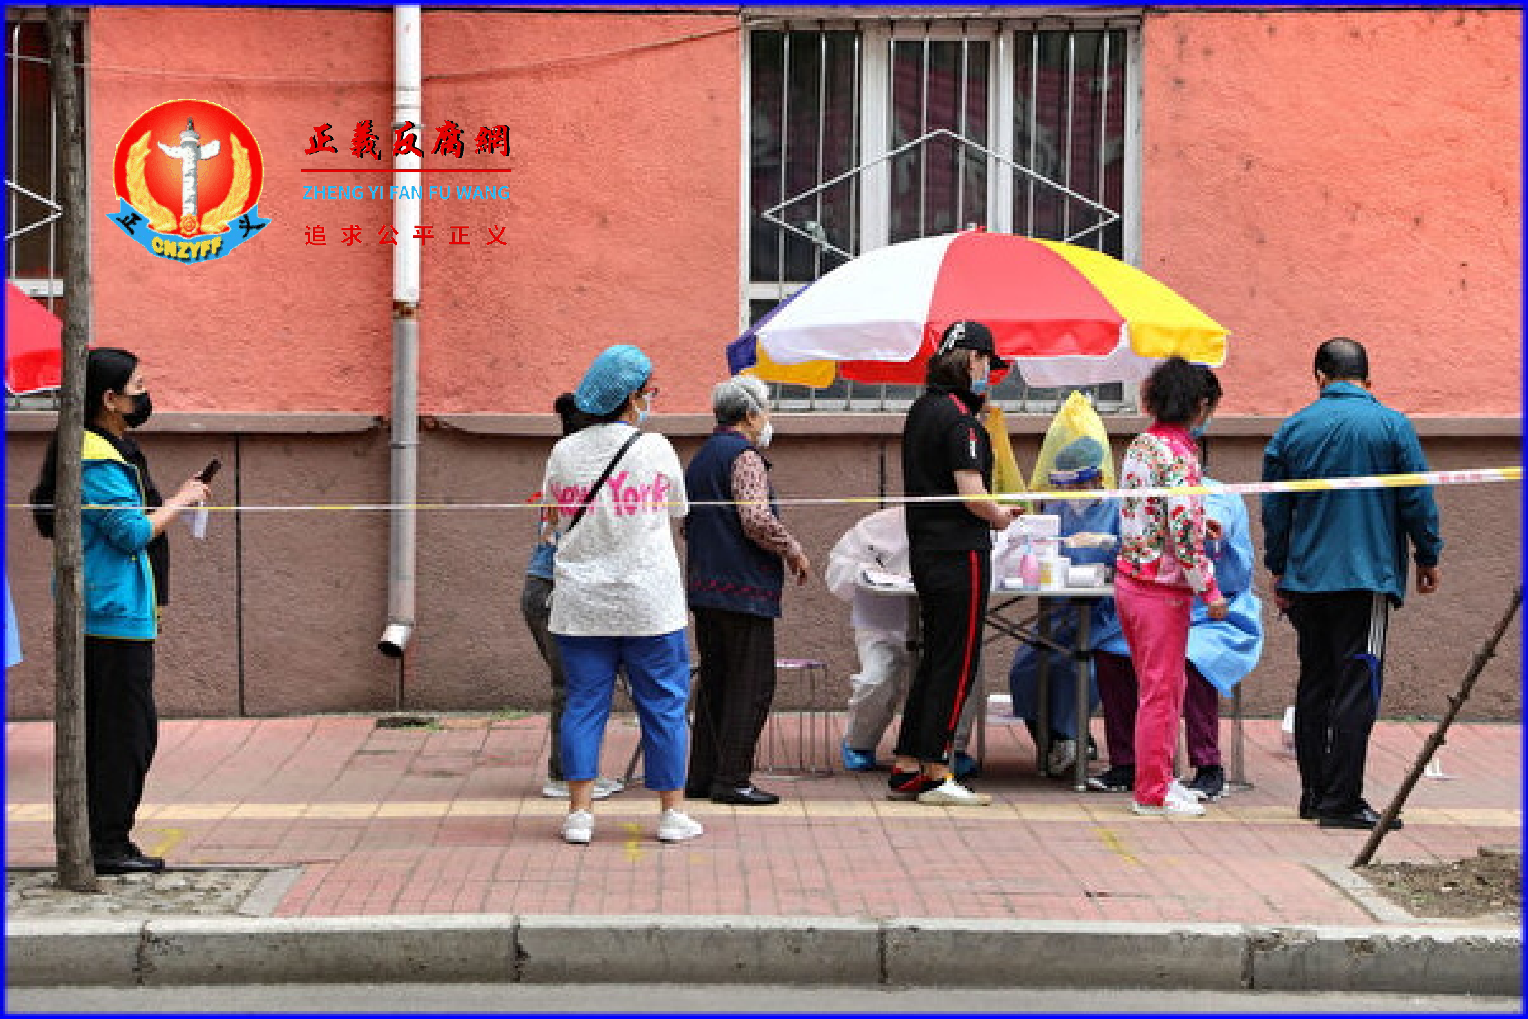 11月12日，黑龙江一店员午睡未戴口罩被黄牌警告。图为黑龙江牡丹江市的一条街道上，人们戴着口罩排队等待接受核酸检测。.png